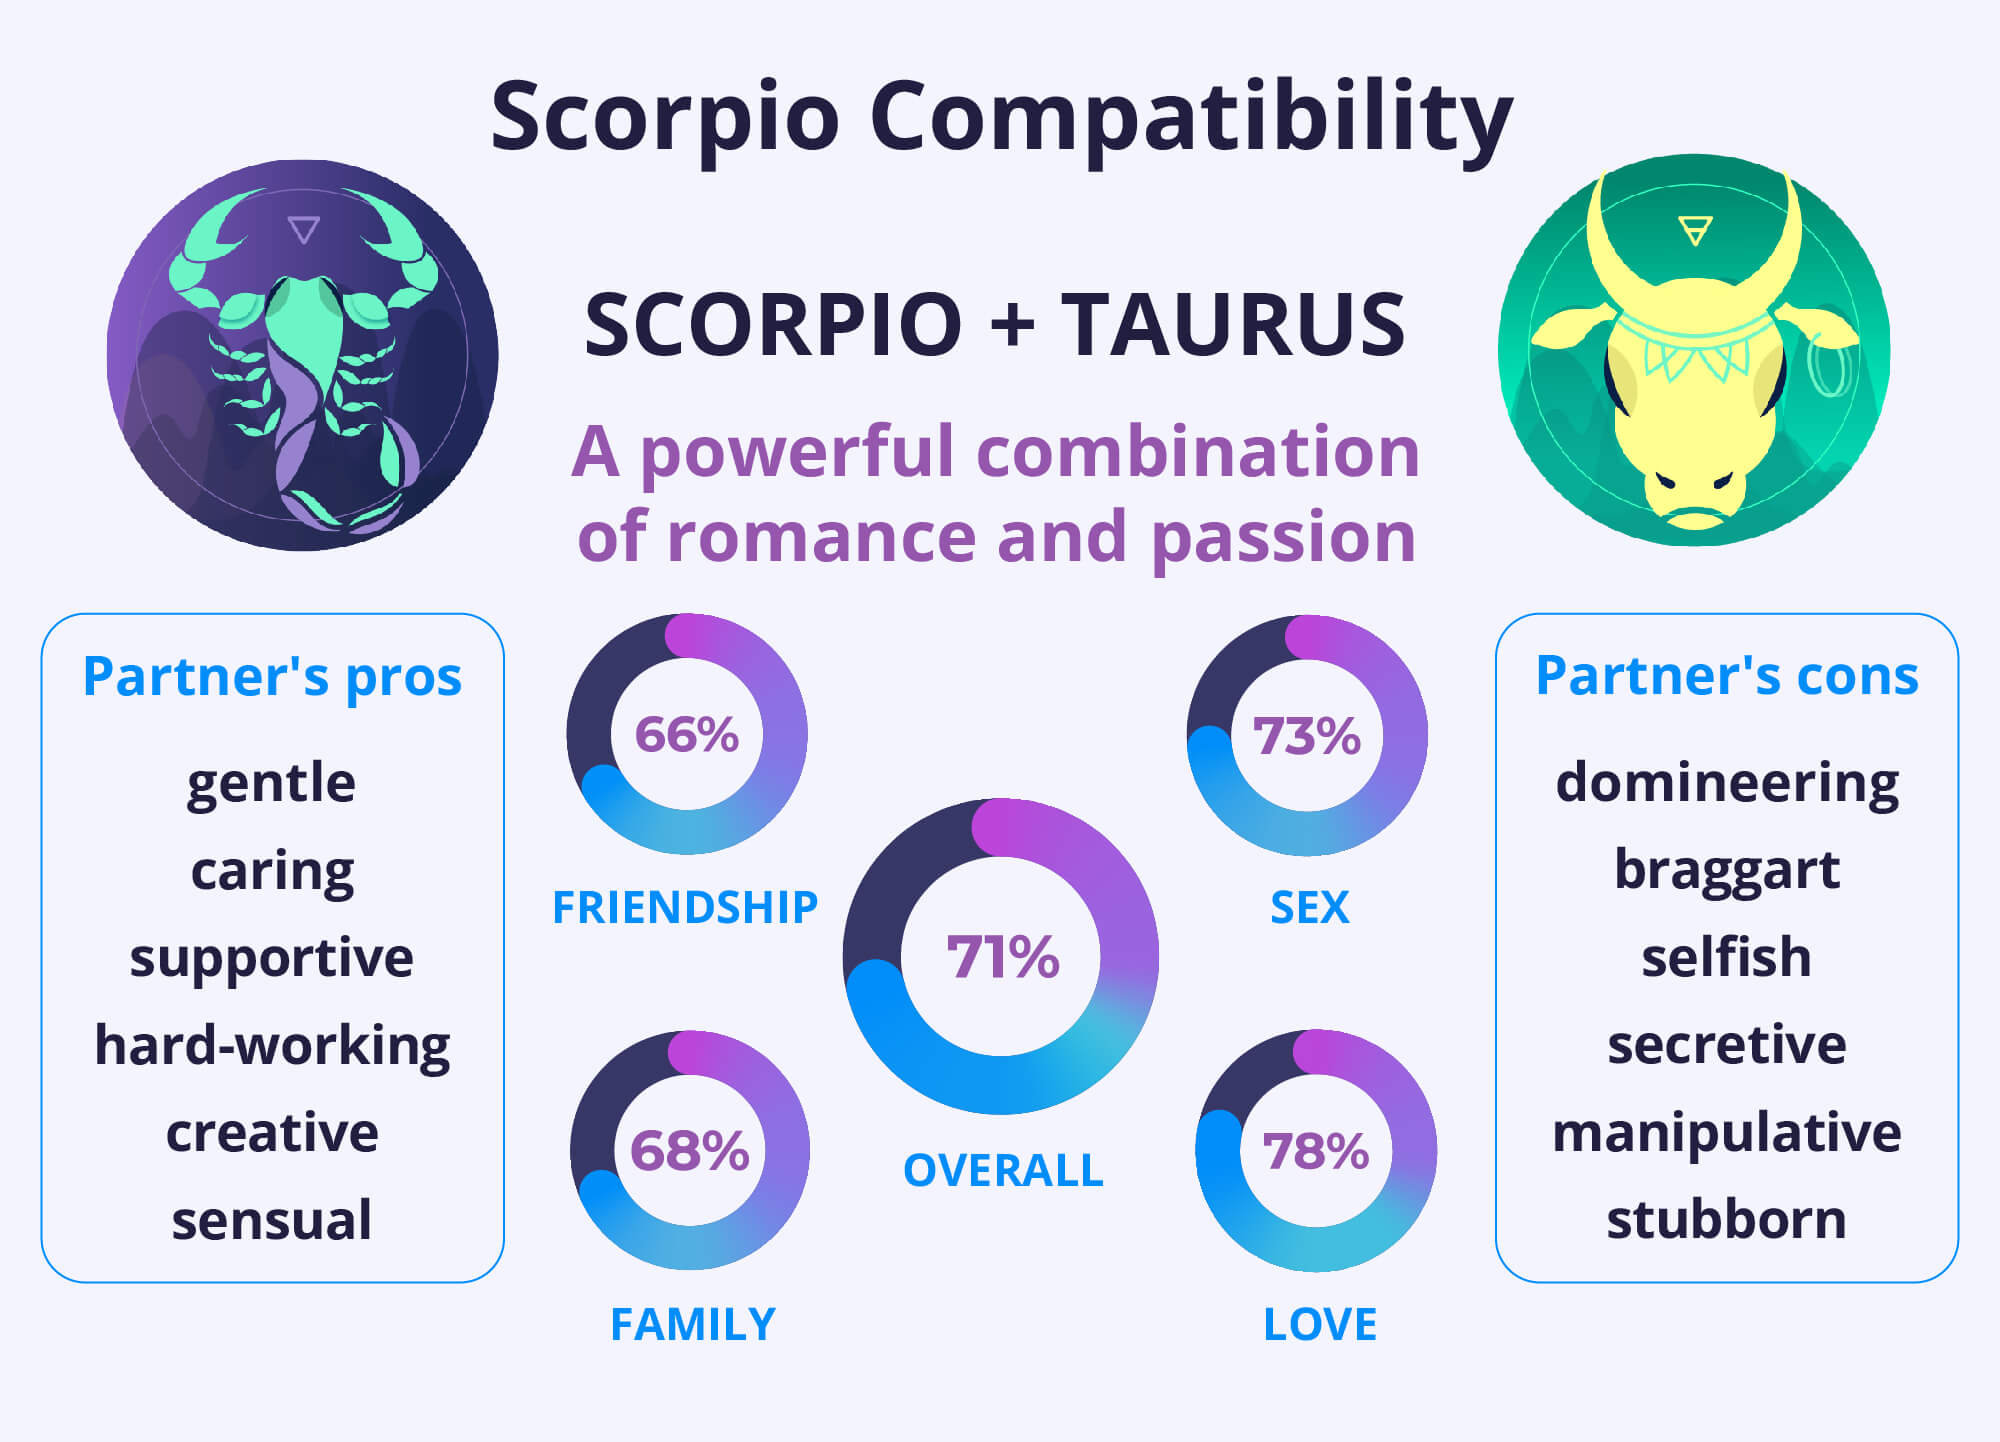 Scorpio and Taurus Compatibility Chart